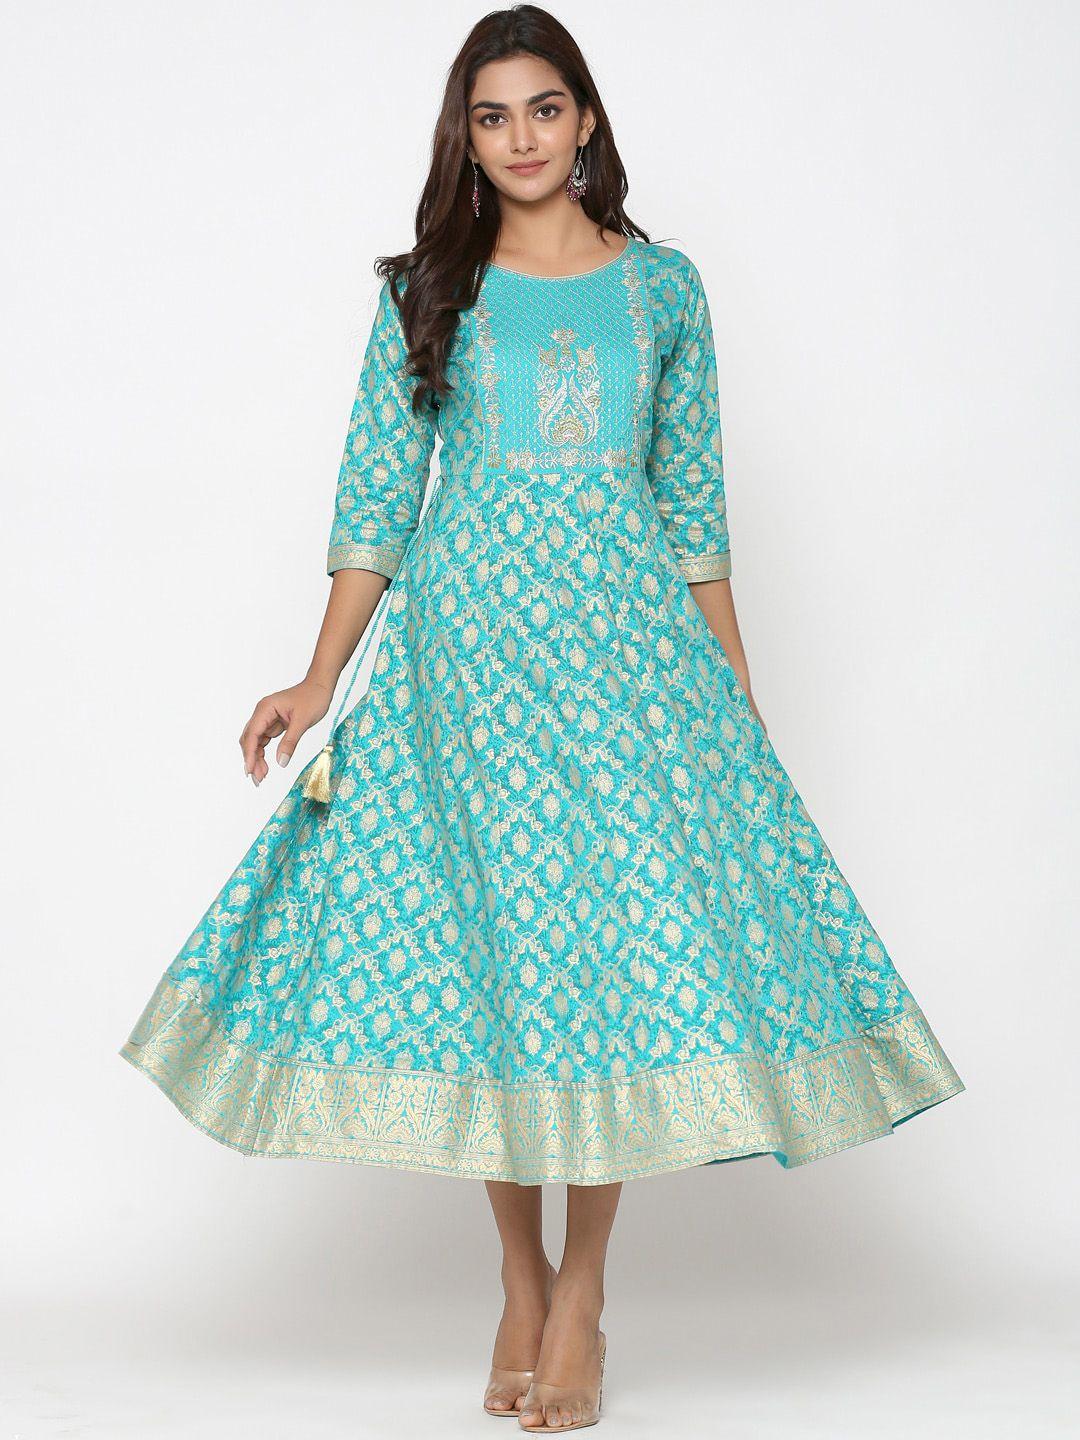 unisets turquoise blue & white ethnic motifs ethnic a-line midi dress